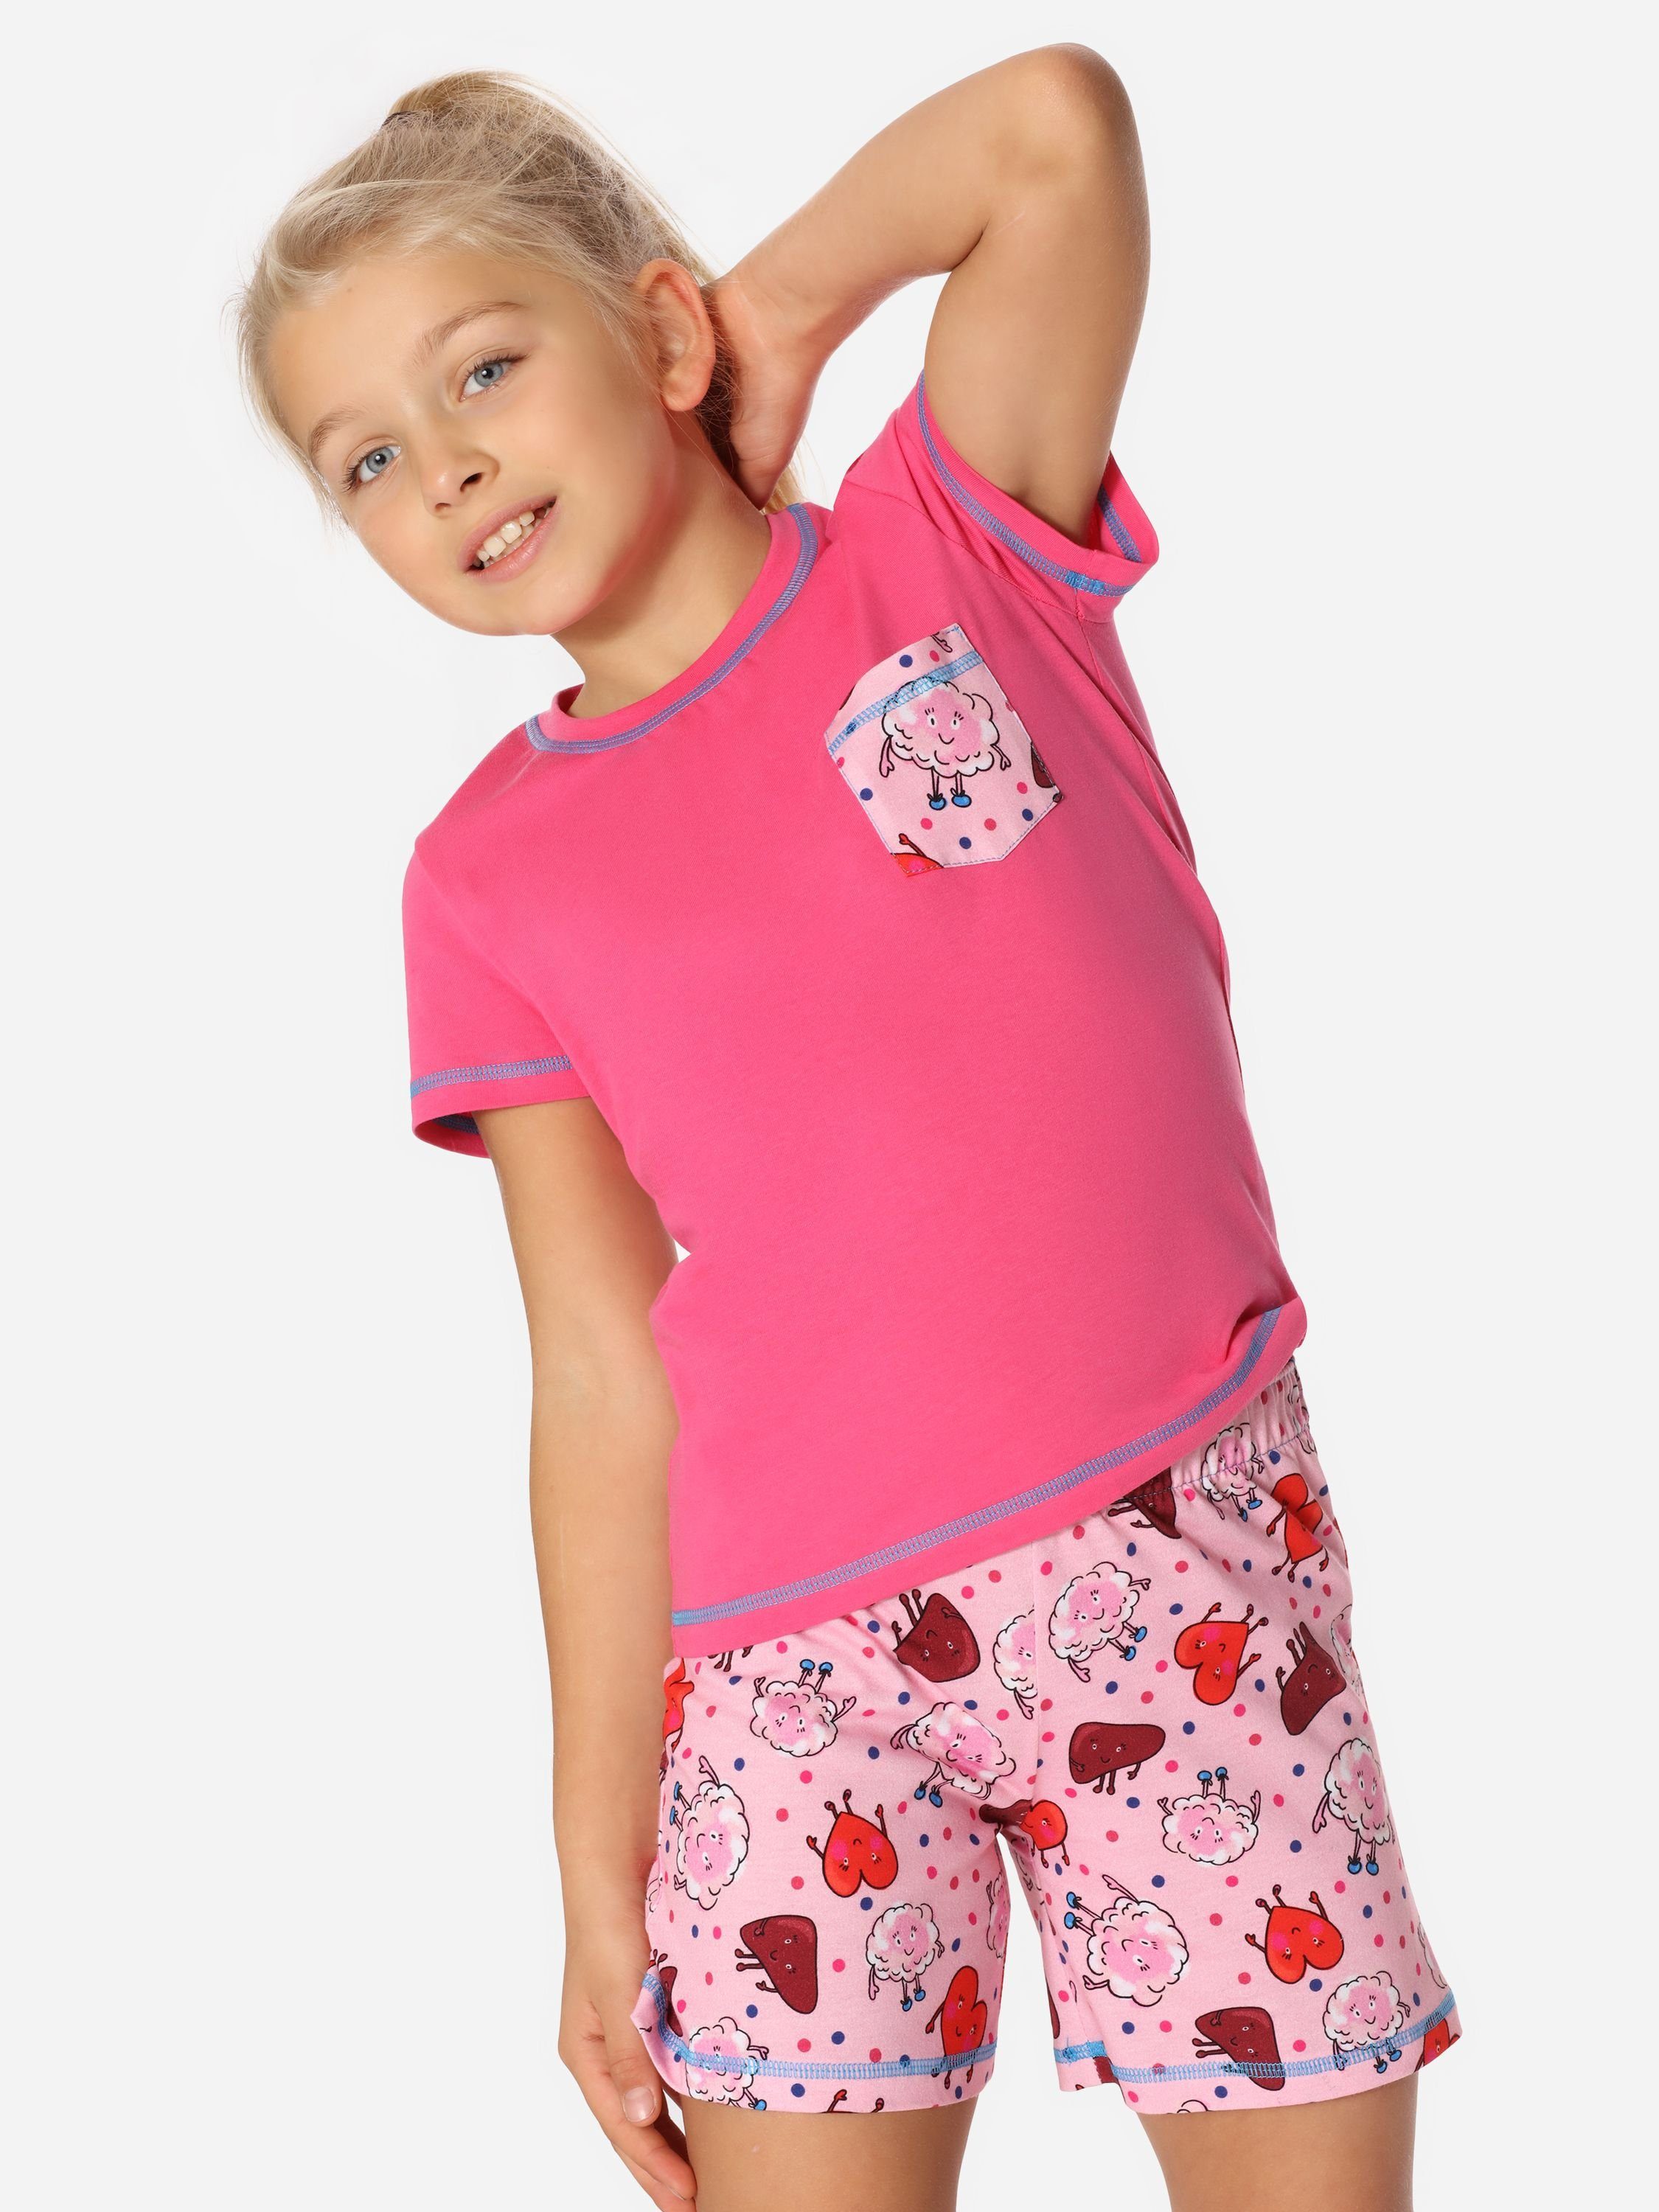 Style Baumwolle Pyjama aus Rosa/Glücklich/Körper Set Kurz Schlafanzüge MS10-292 Merry Schlafanzug Mädchen